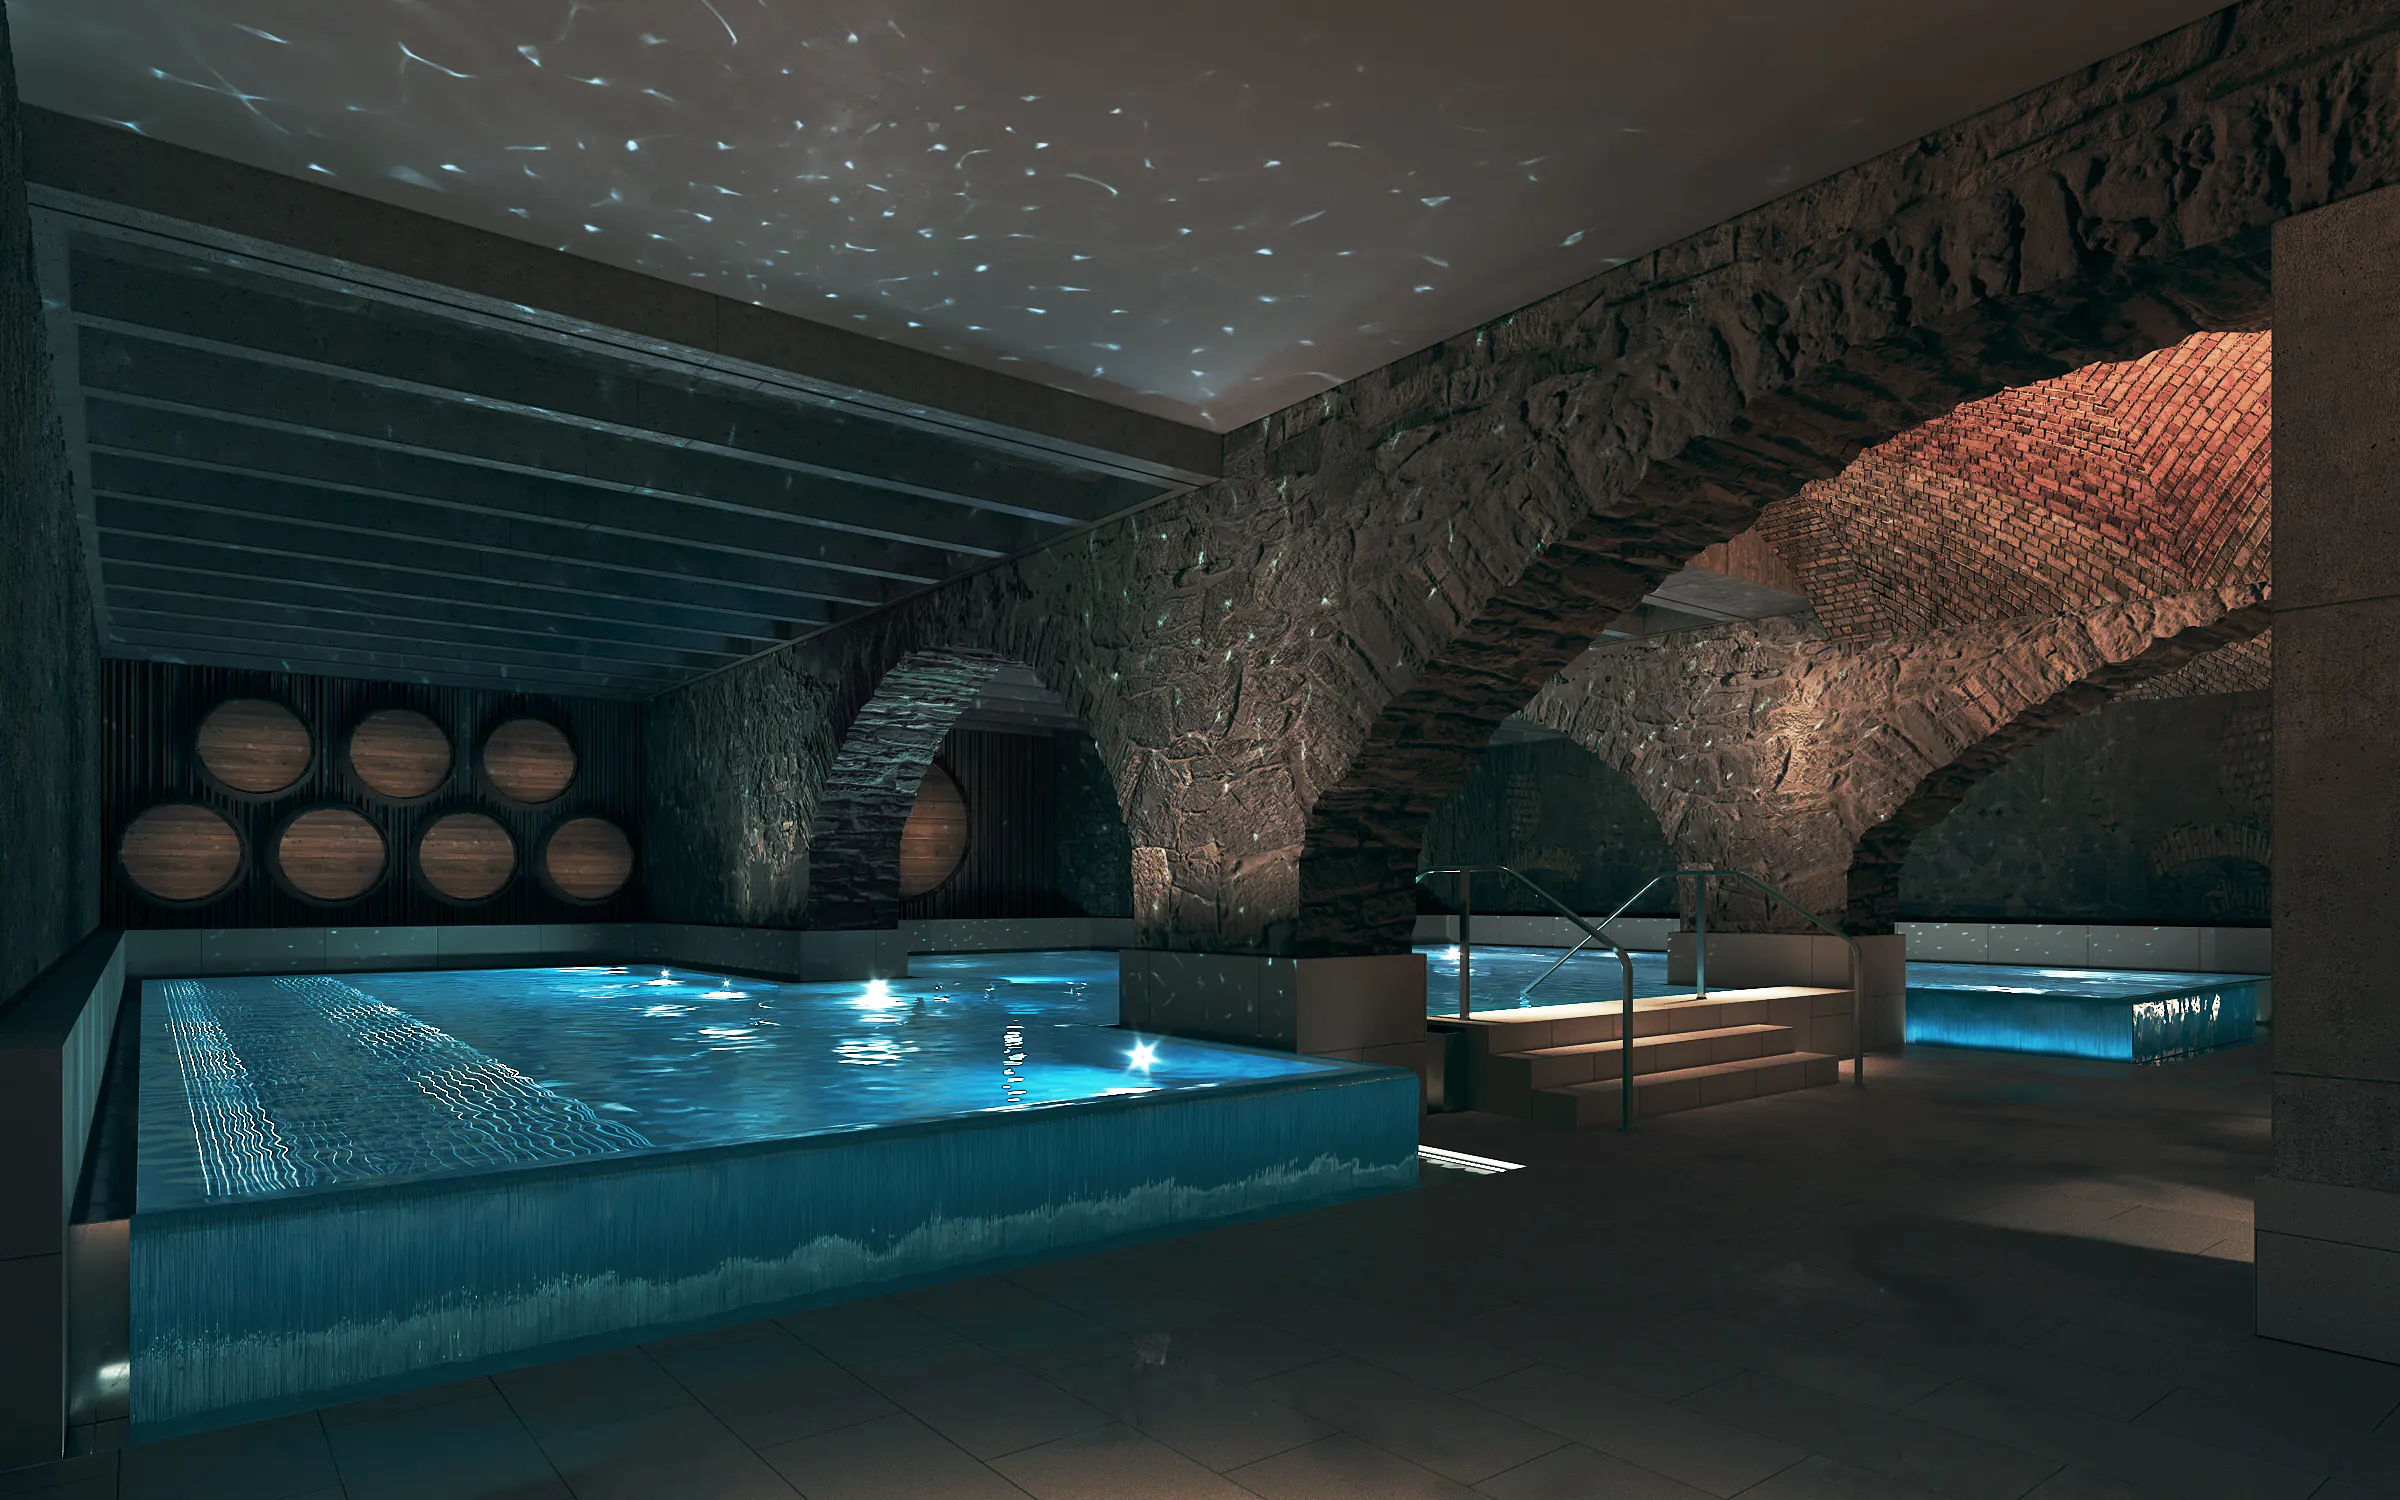 Innenvisualisierung des Thermalbads Spa Hürlimann in Zurich